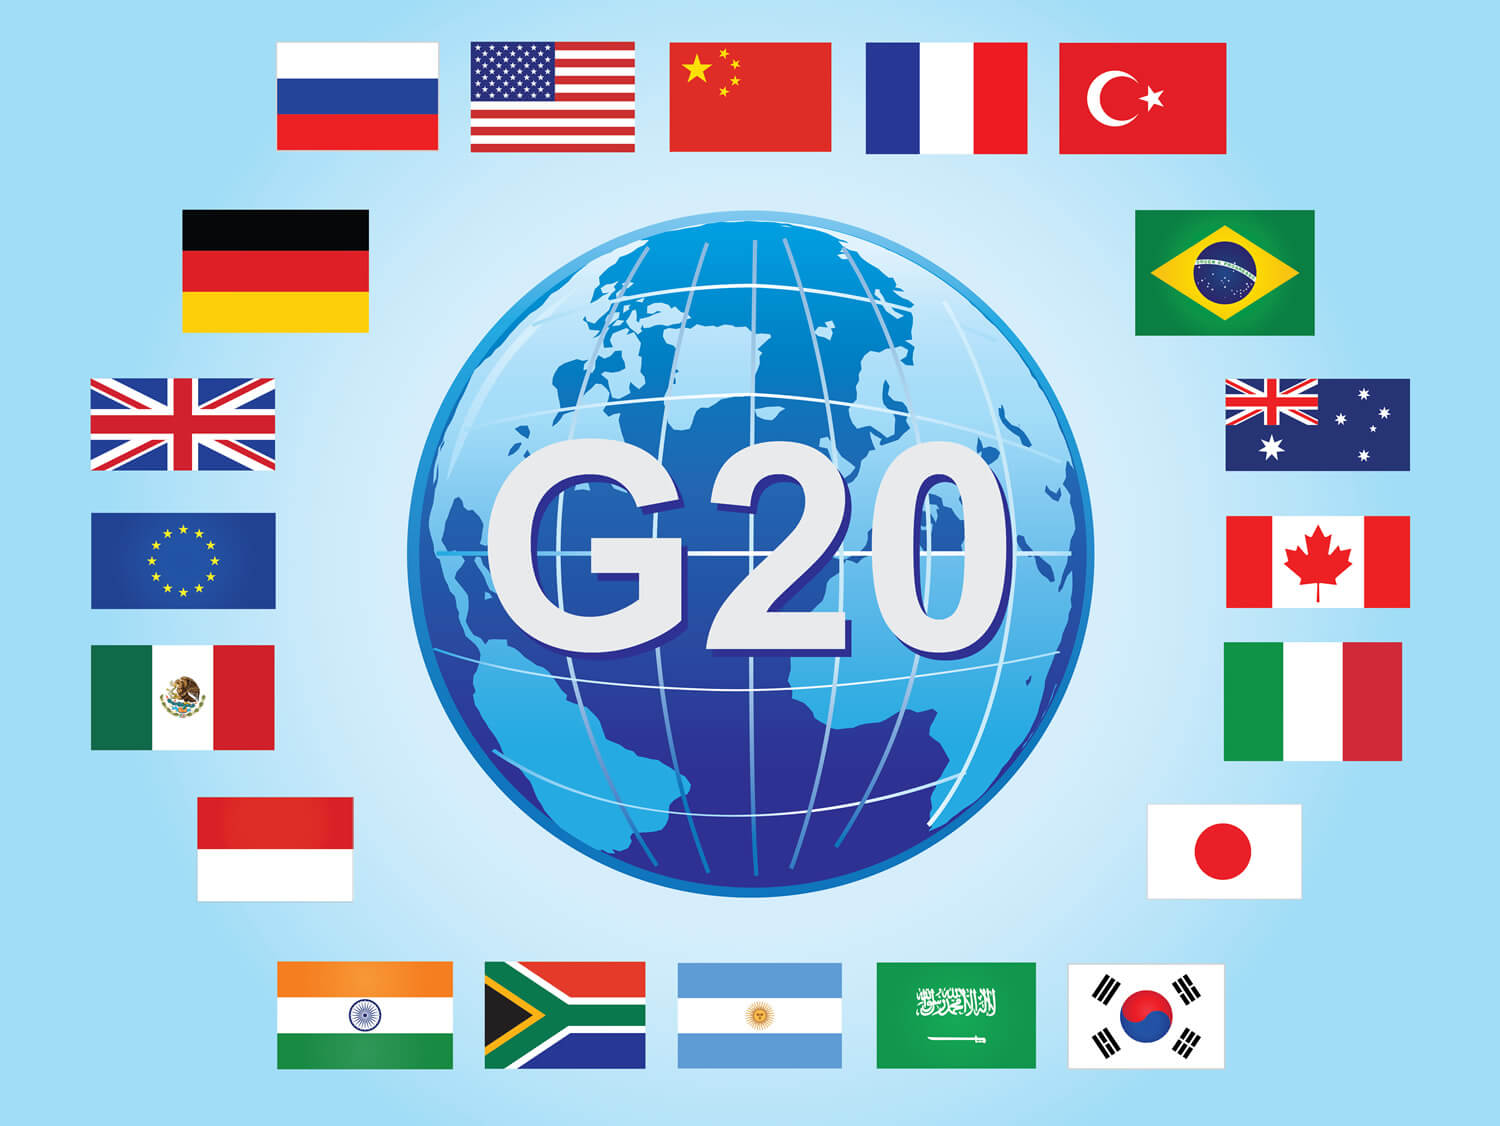 Определились места проведения следующих саммитов  G20